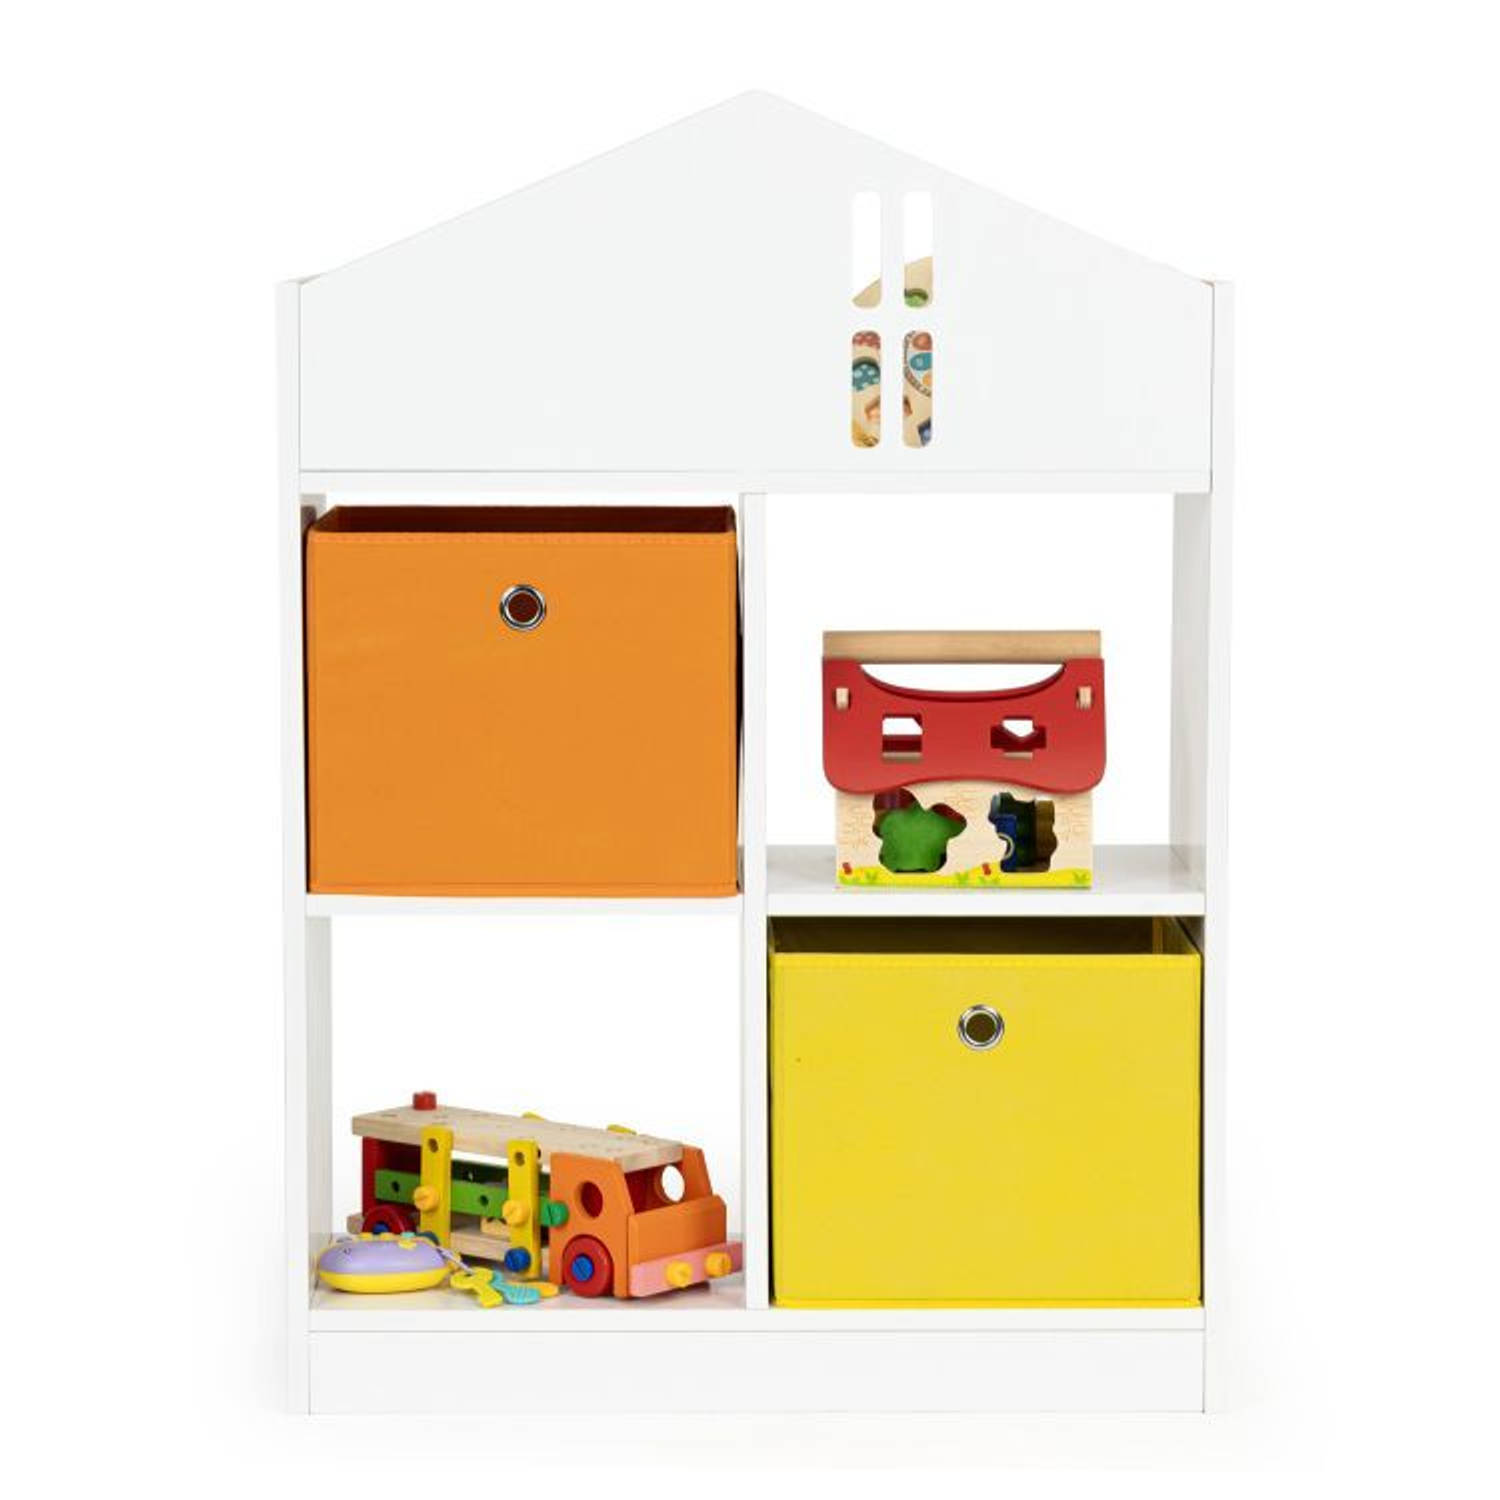 Ecotoys boekenkast met 2 mandjes speelgoedkast 6 vakken kinderkast wit-oranje-geel 65.2 x 27 x 90.5 